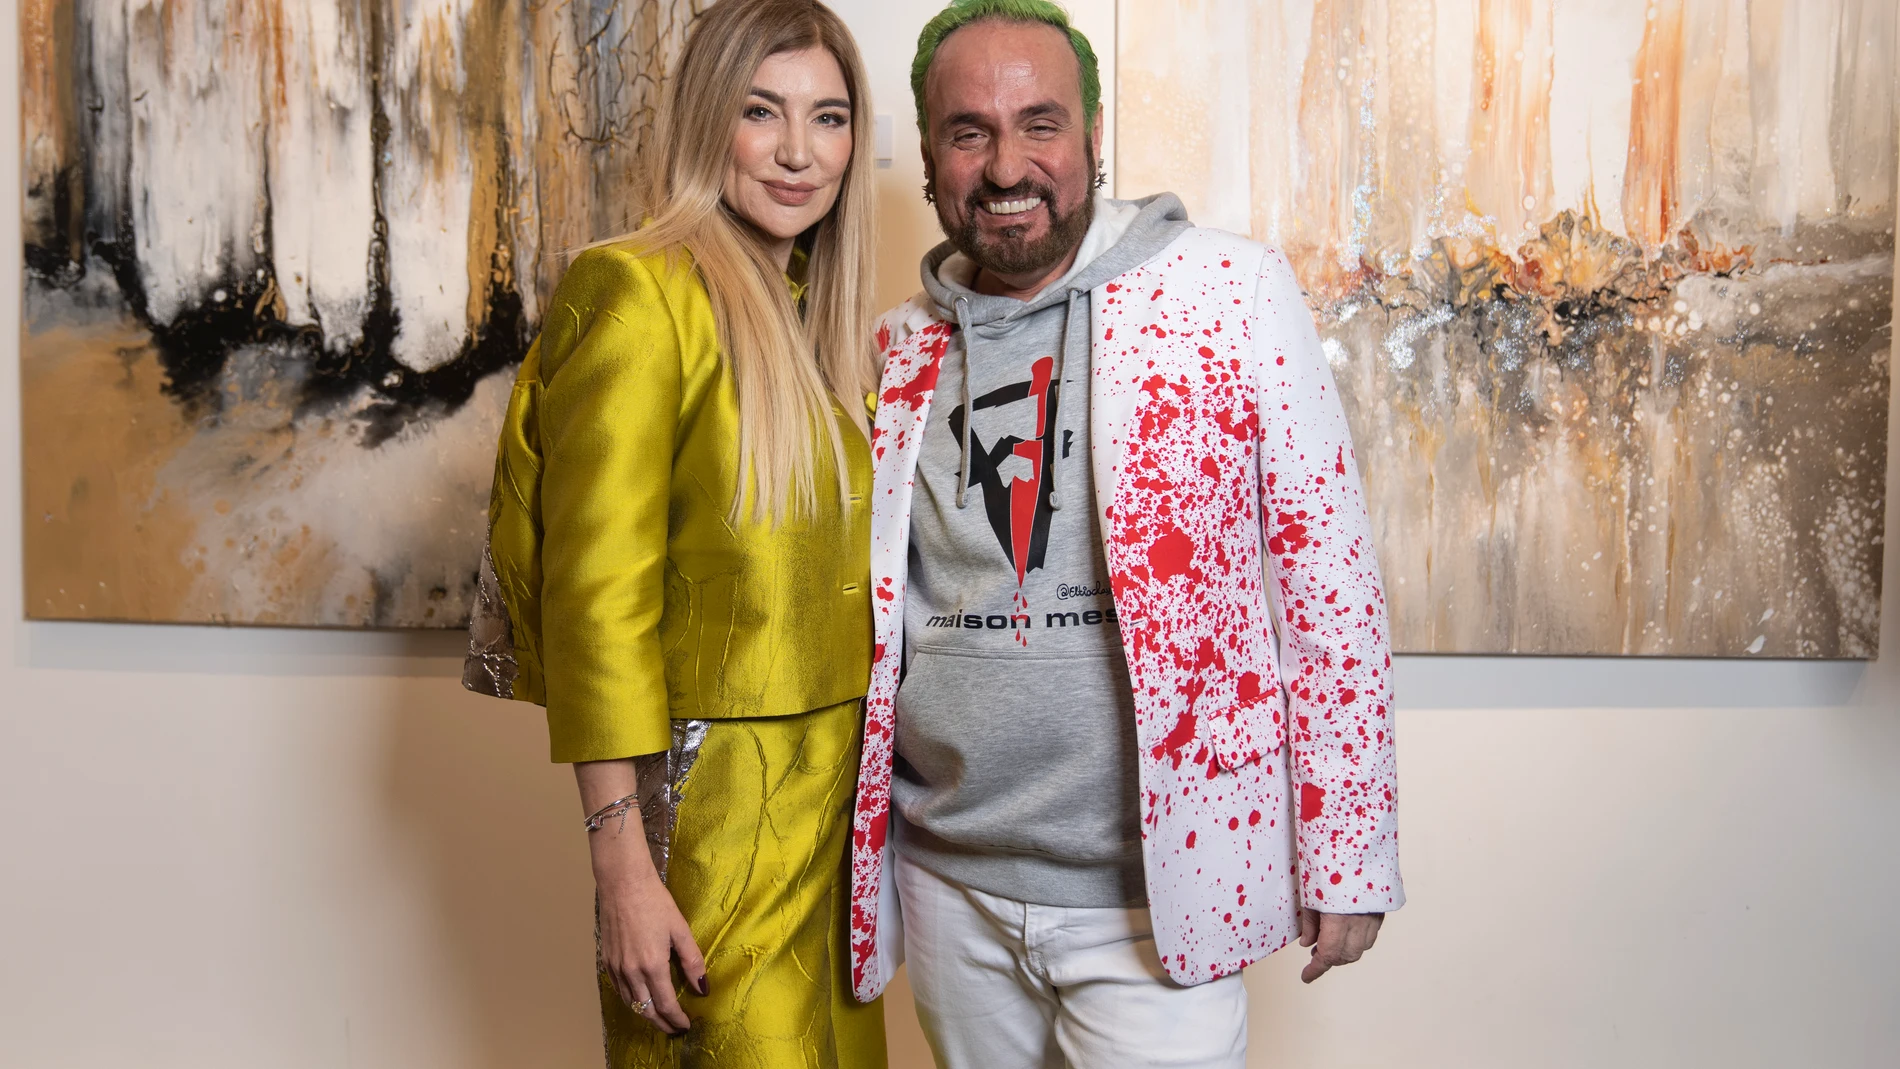 La pintora Elena Ksanti y la firma Maison Mesa unen arte y moda con esta colaboracion en el marco de Madrid es Moda